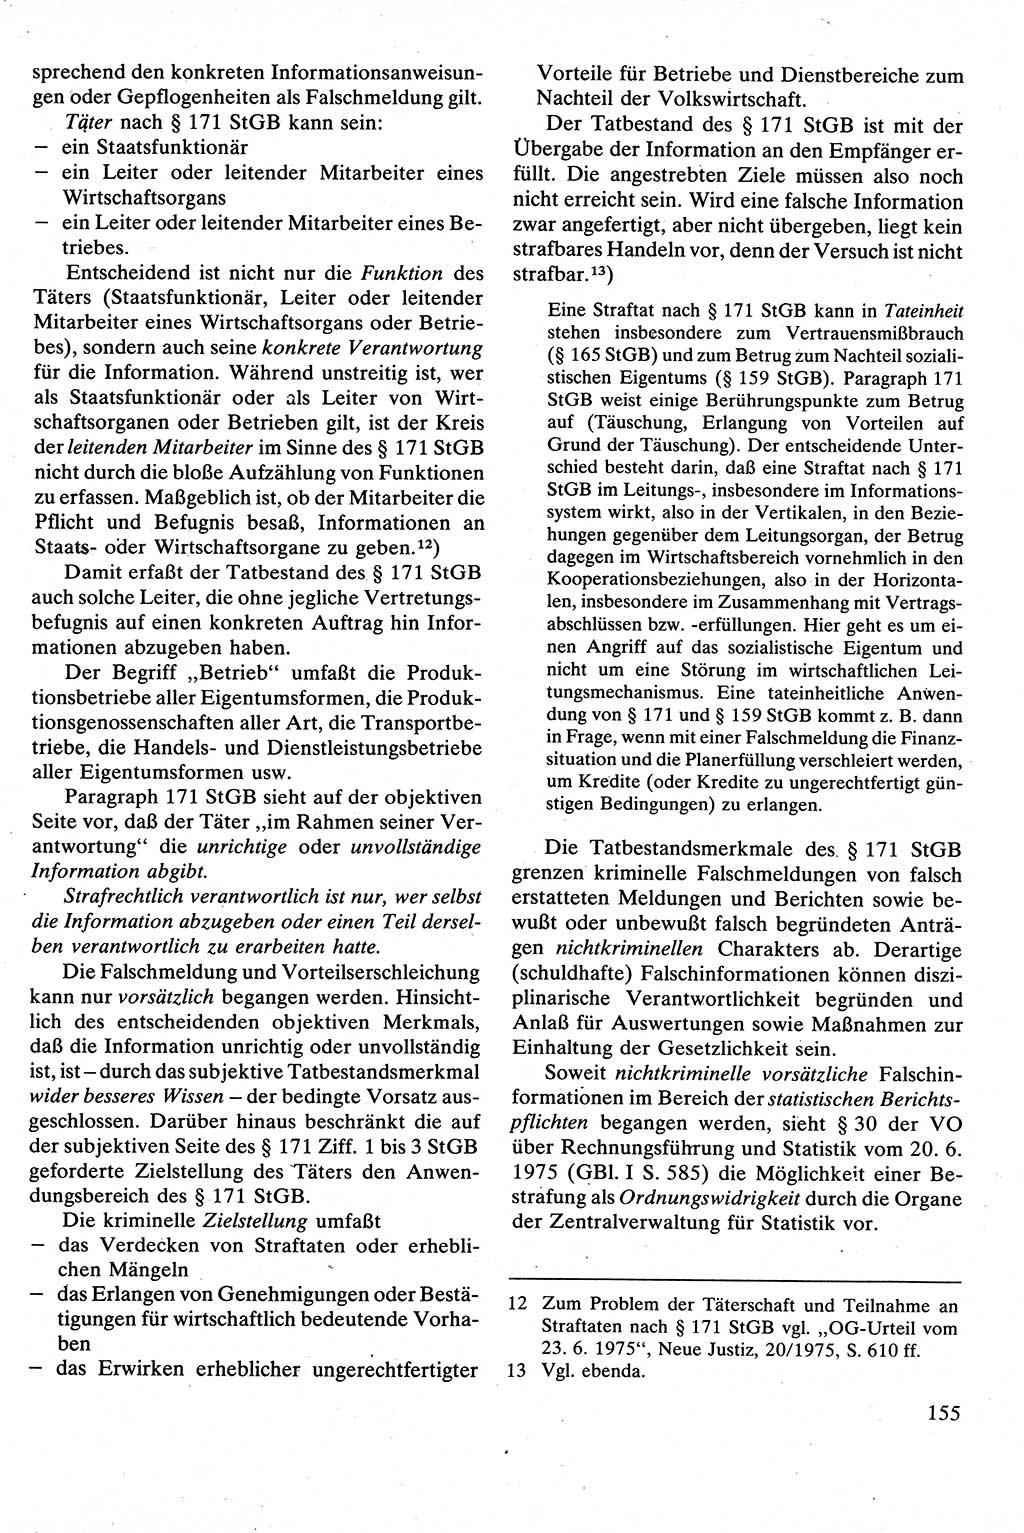 Strafrecht [Deutsche Demokratische Republik (DDR)], Besonderer Teil, Lehrbuch 1981, Seite 155 (Strafr. DDR BT Lb. 1981, S. 155)